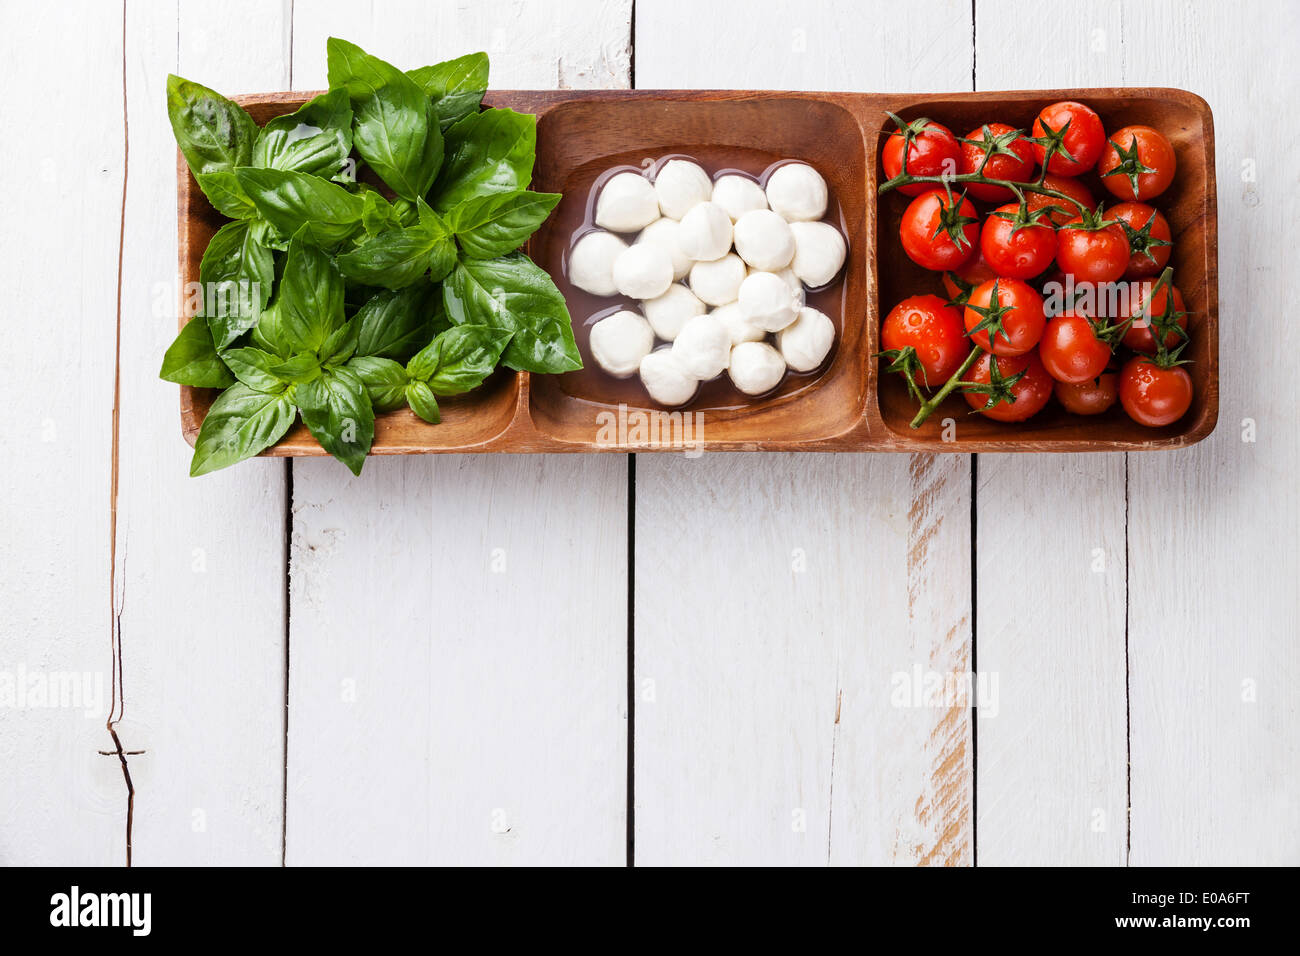 Il verde del basilico, bianco mozzarella, pomodori rossi - Bandiera Italiana di colori Foto Stock